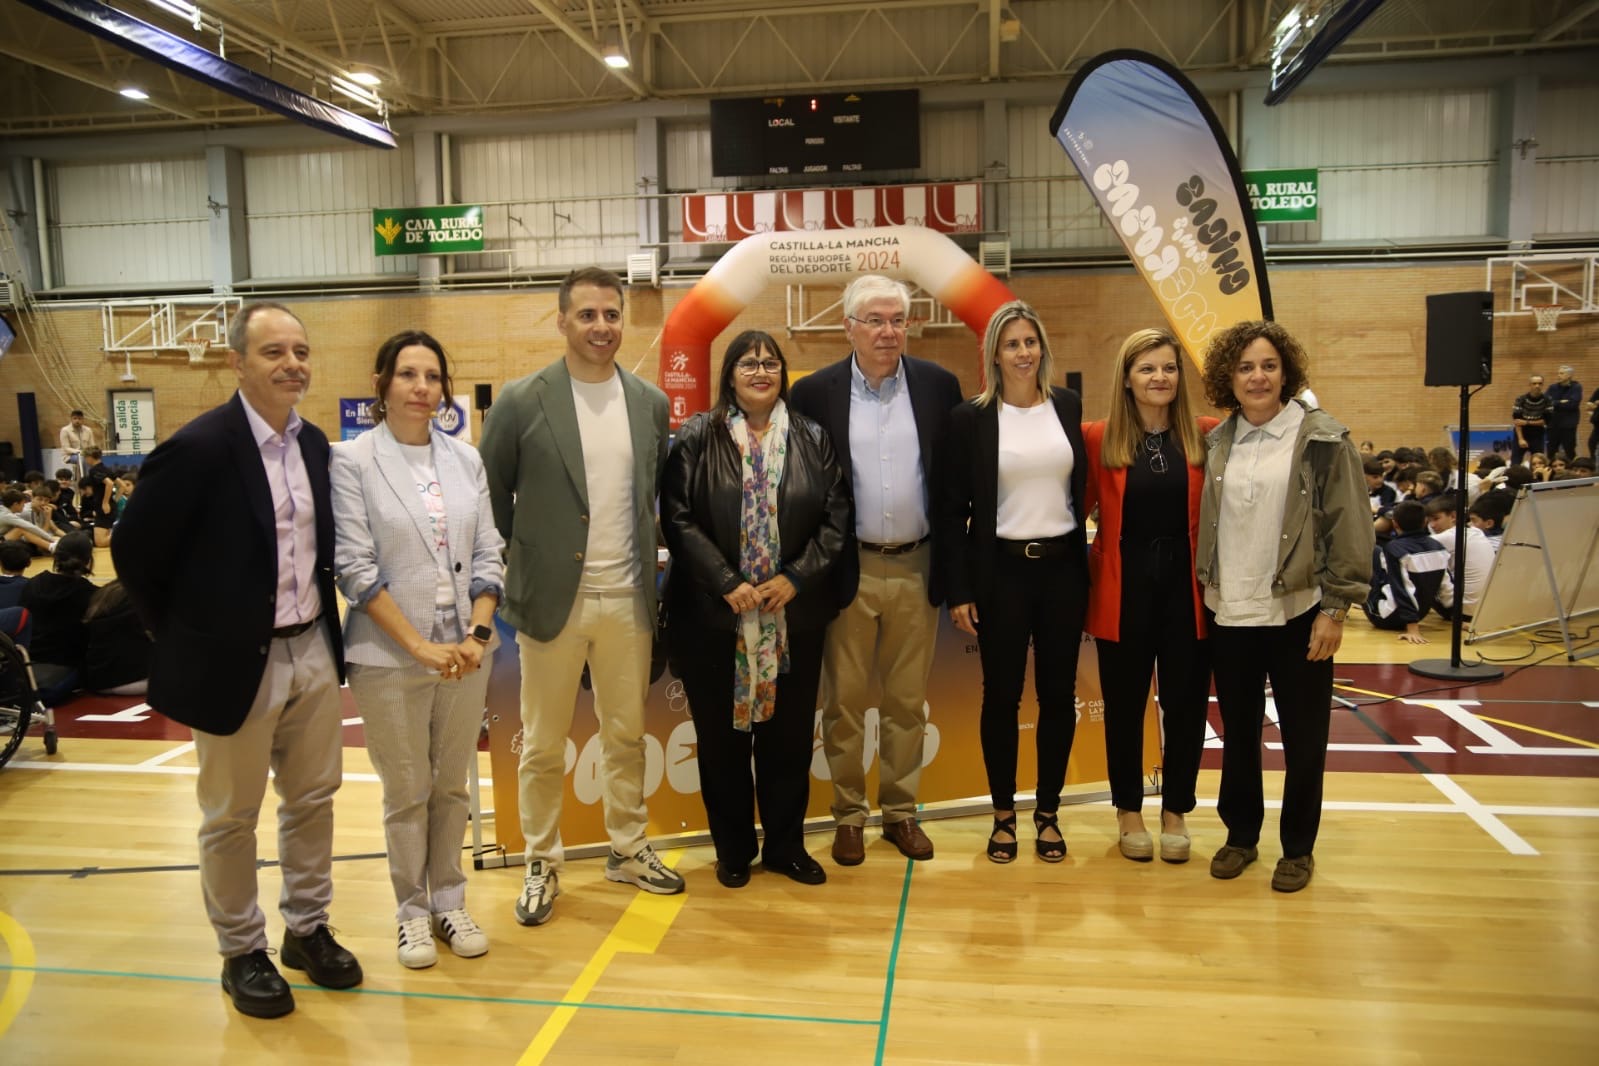 El Gobierno de Castilla-La Mancha destaca los valores del deporte y la importancia de fomentar el mismo especialmente entre las mujeres 